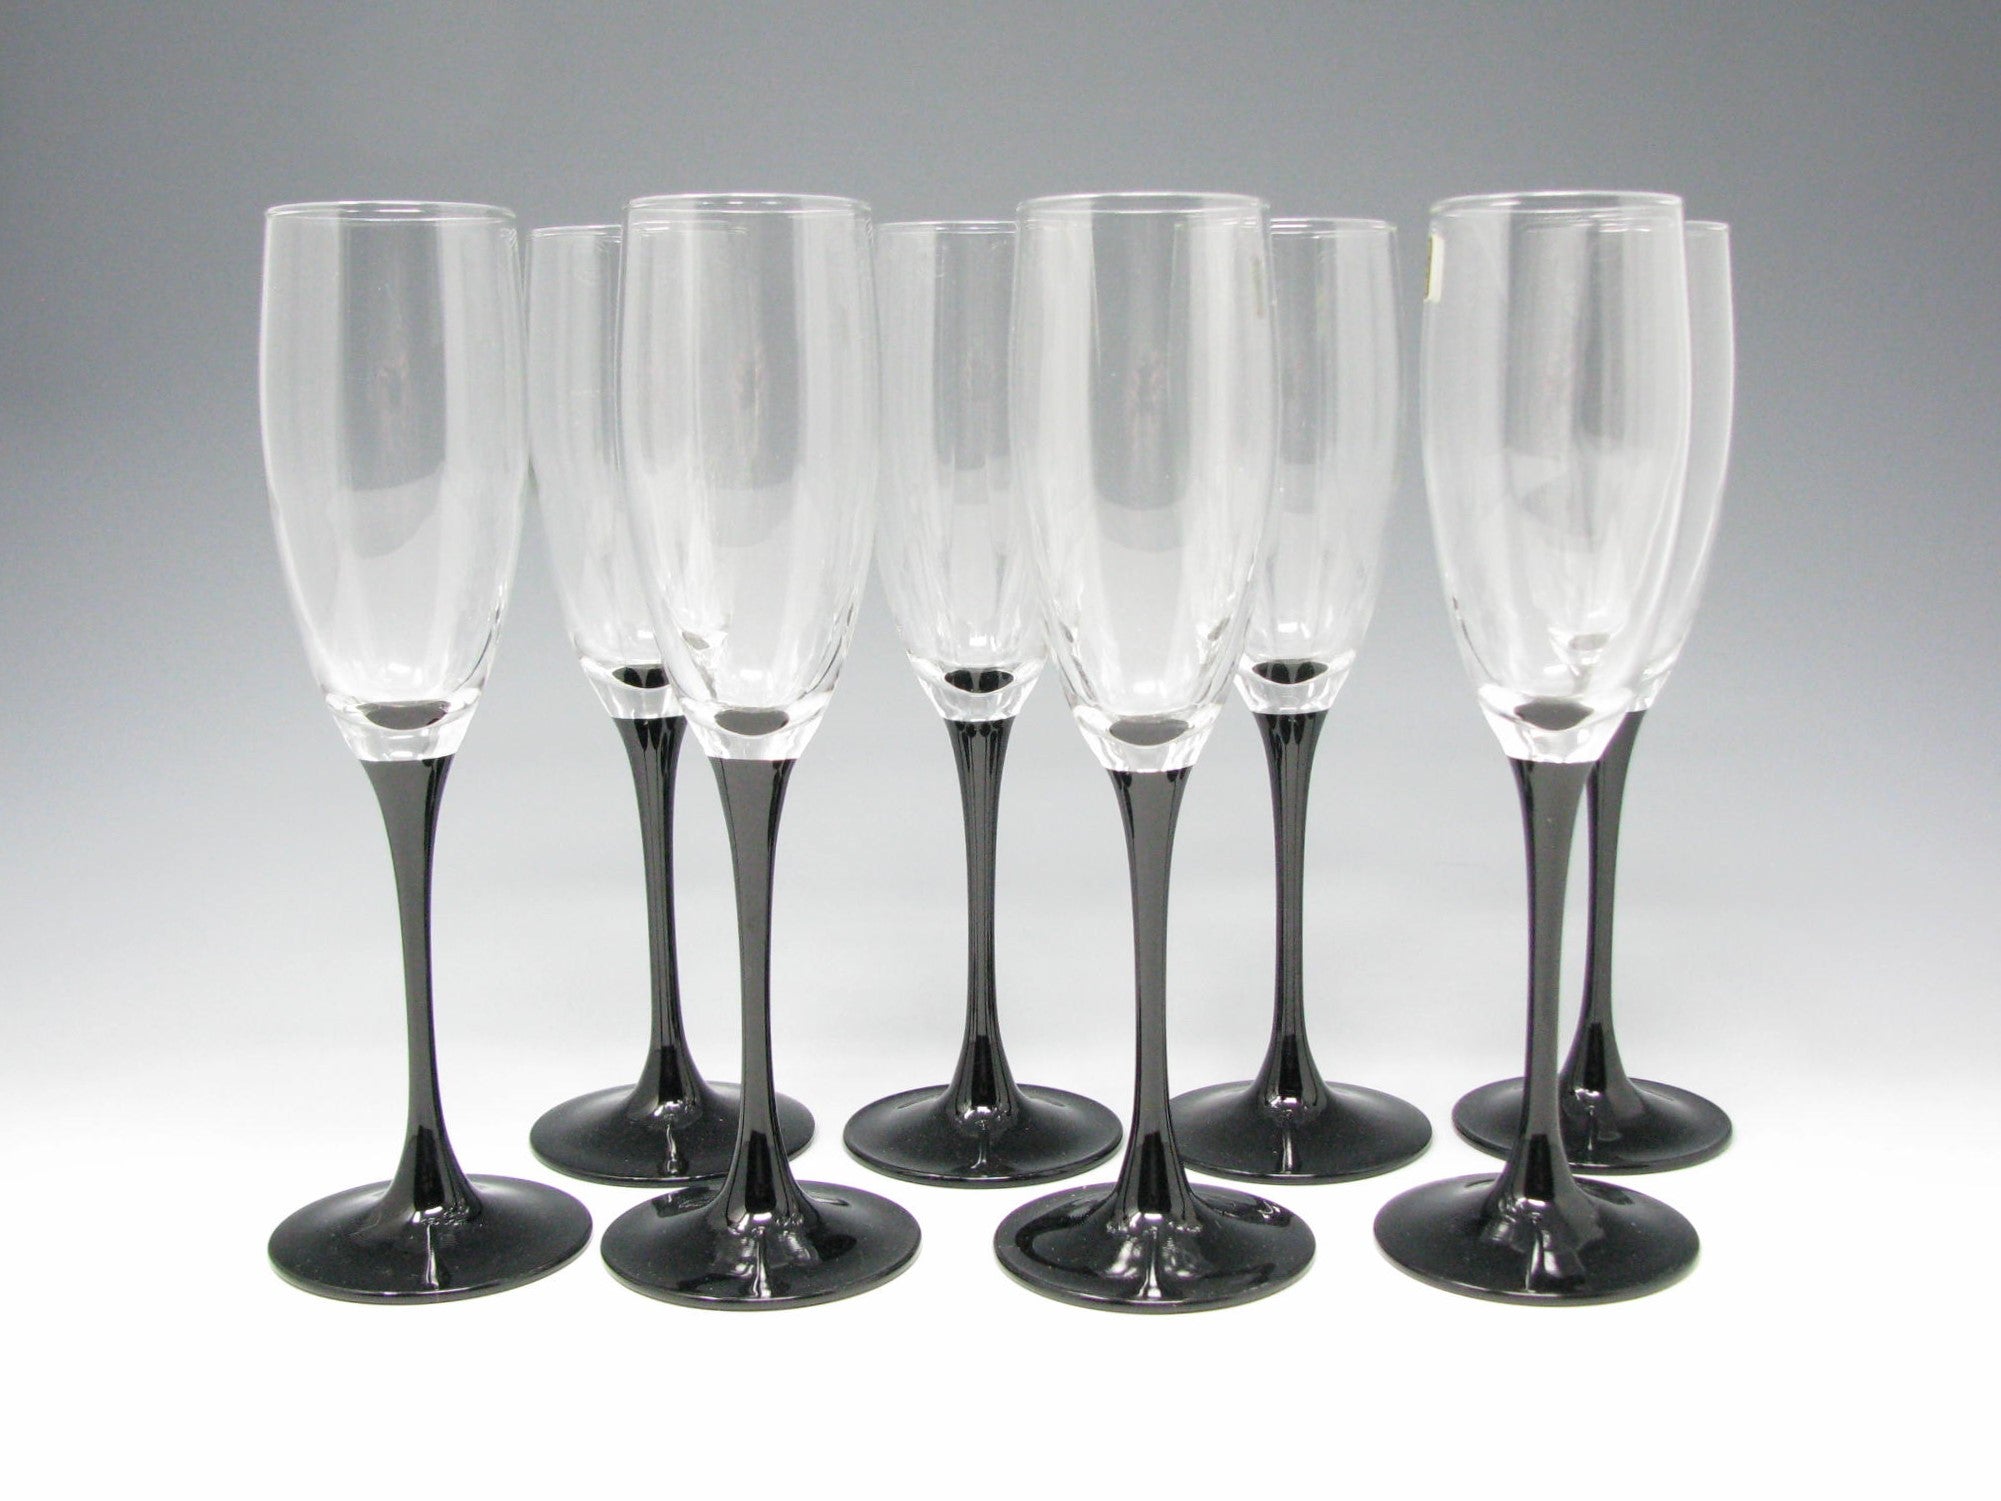 edgebrookhouse - Vintage Luminarc Domino Black Stemmed Champagne Flutes Glasses - Set of 8